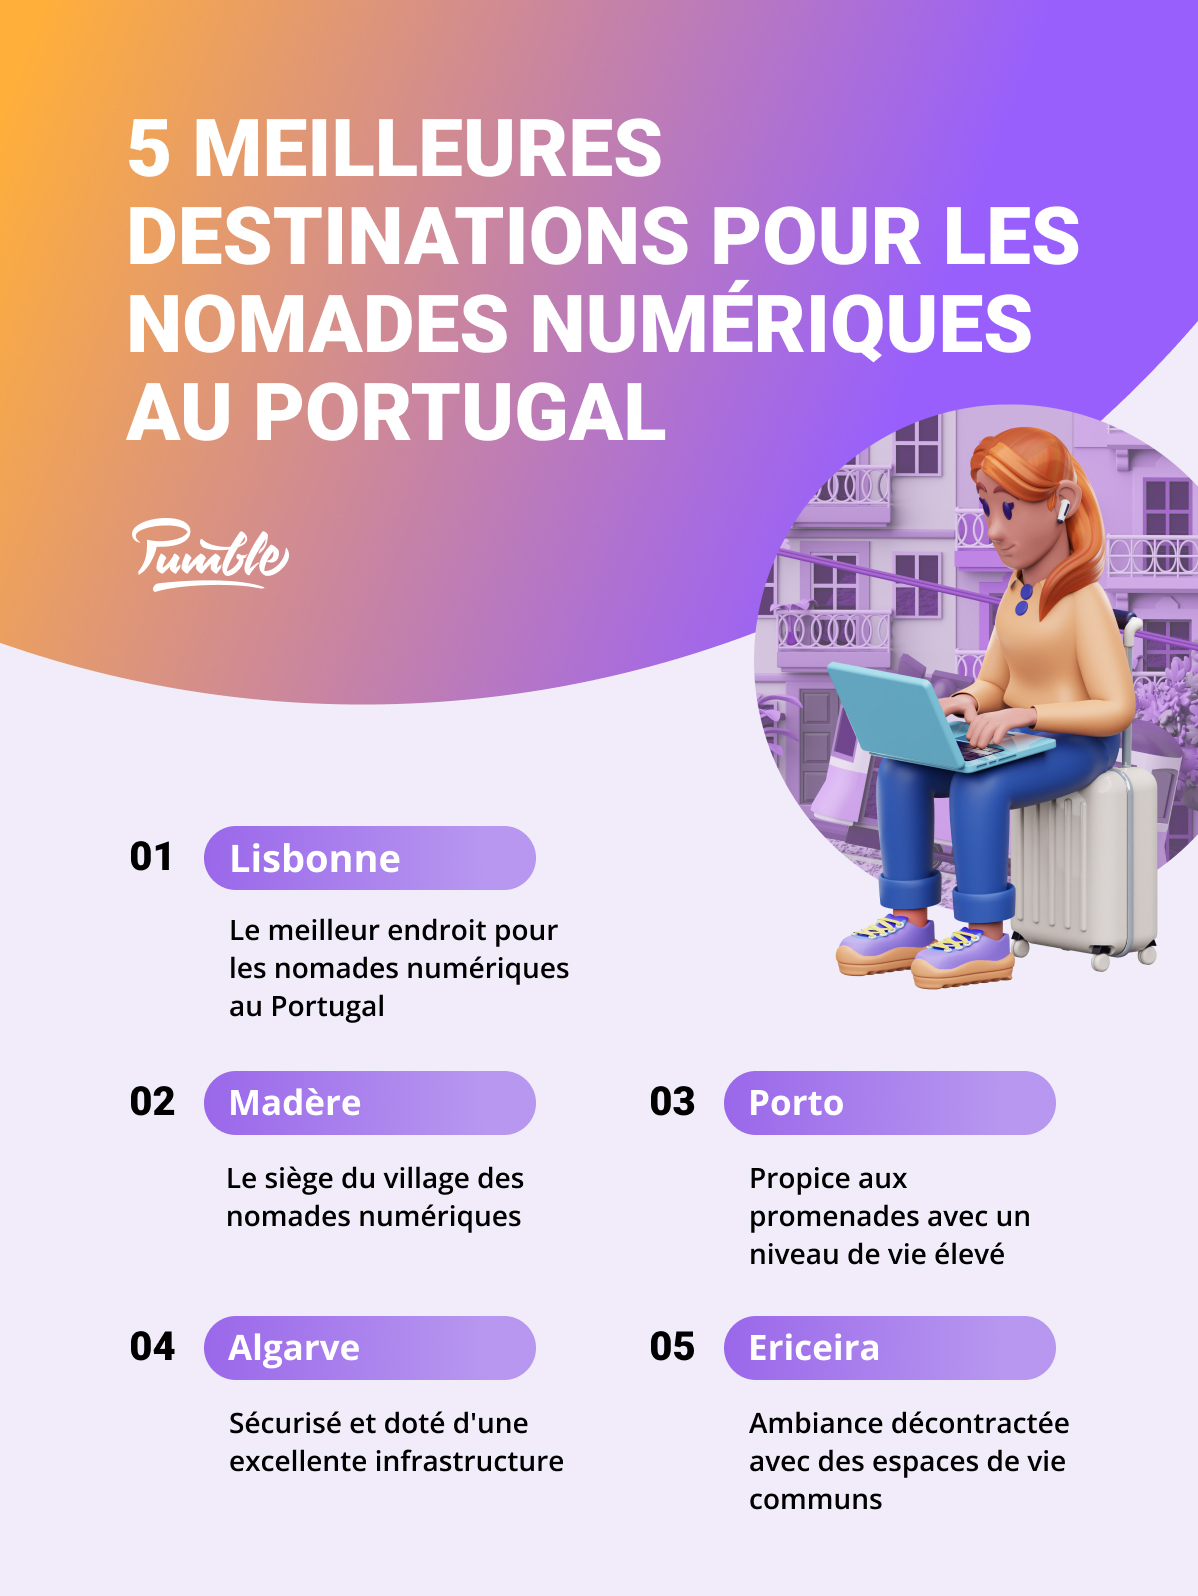 Les 5 meilleures destinations pour les nomades numériques au Portugal